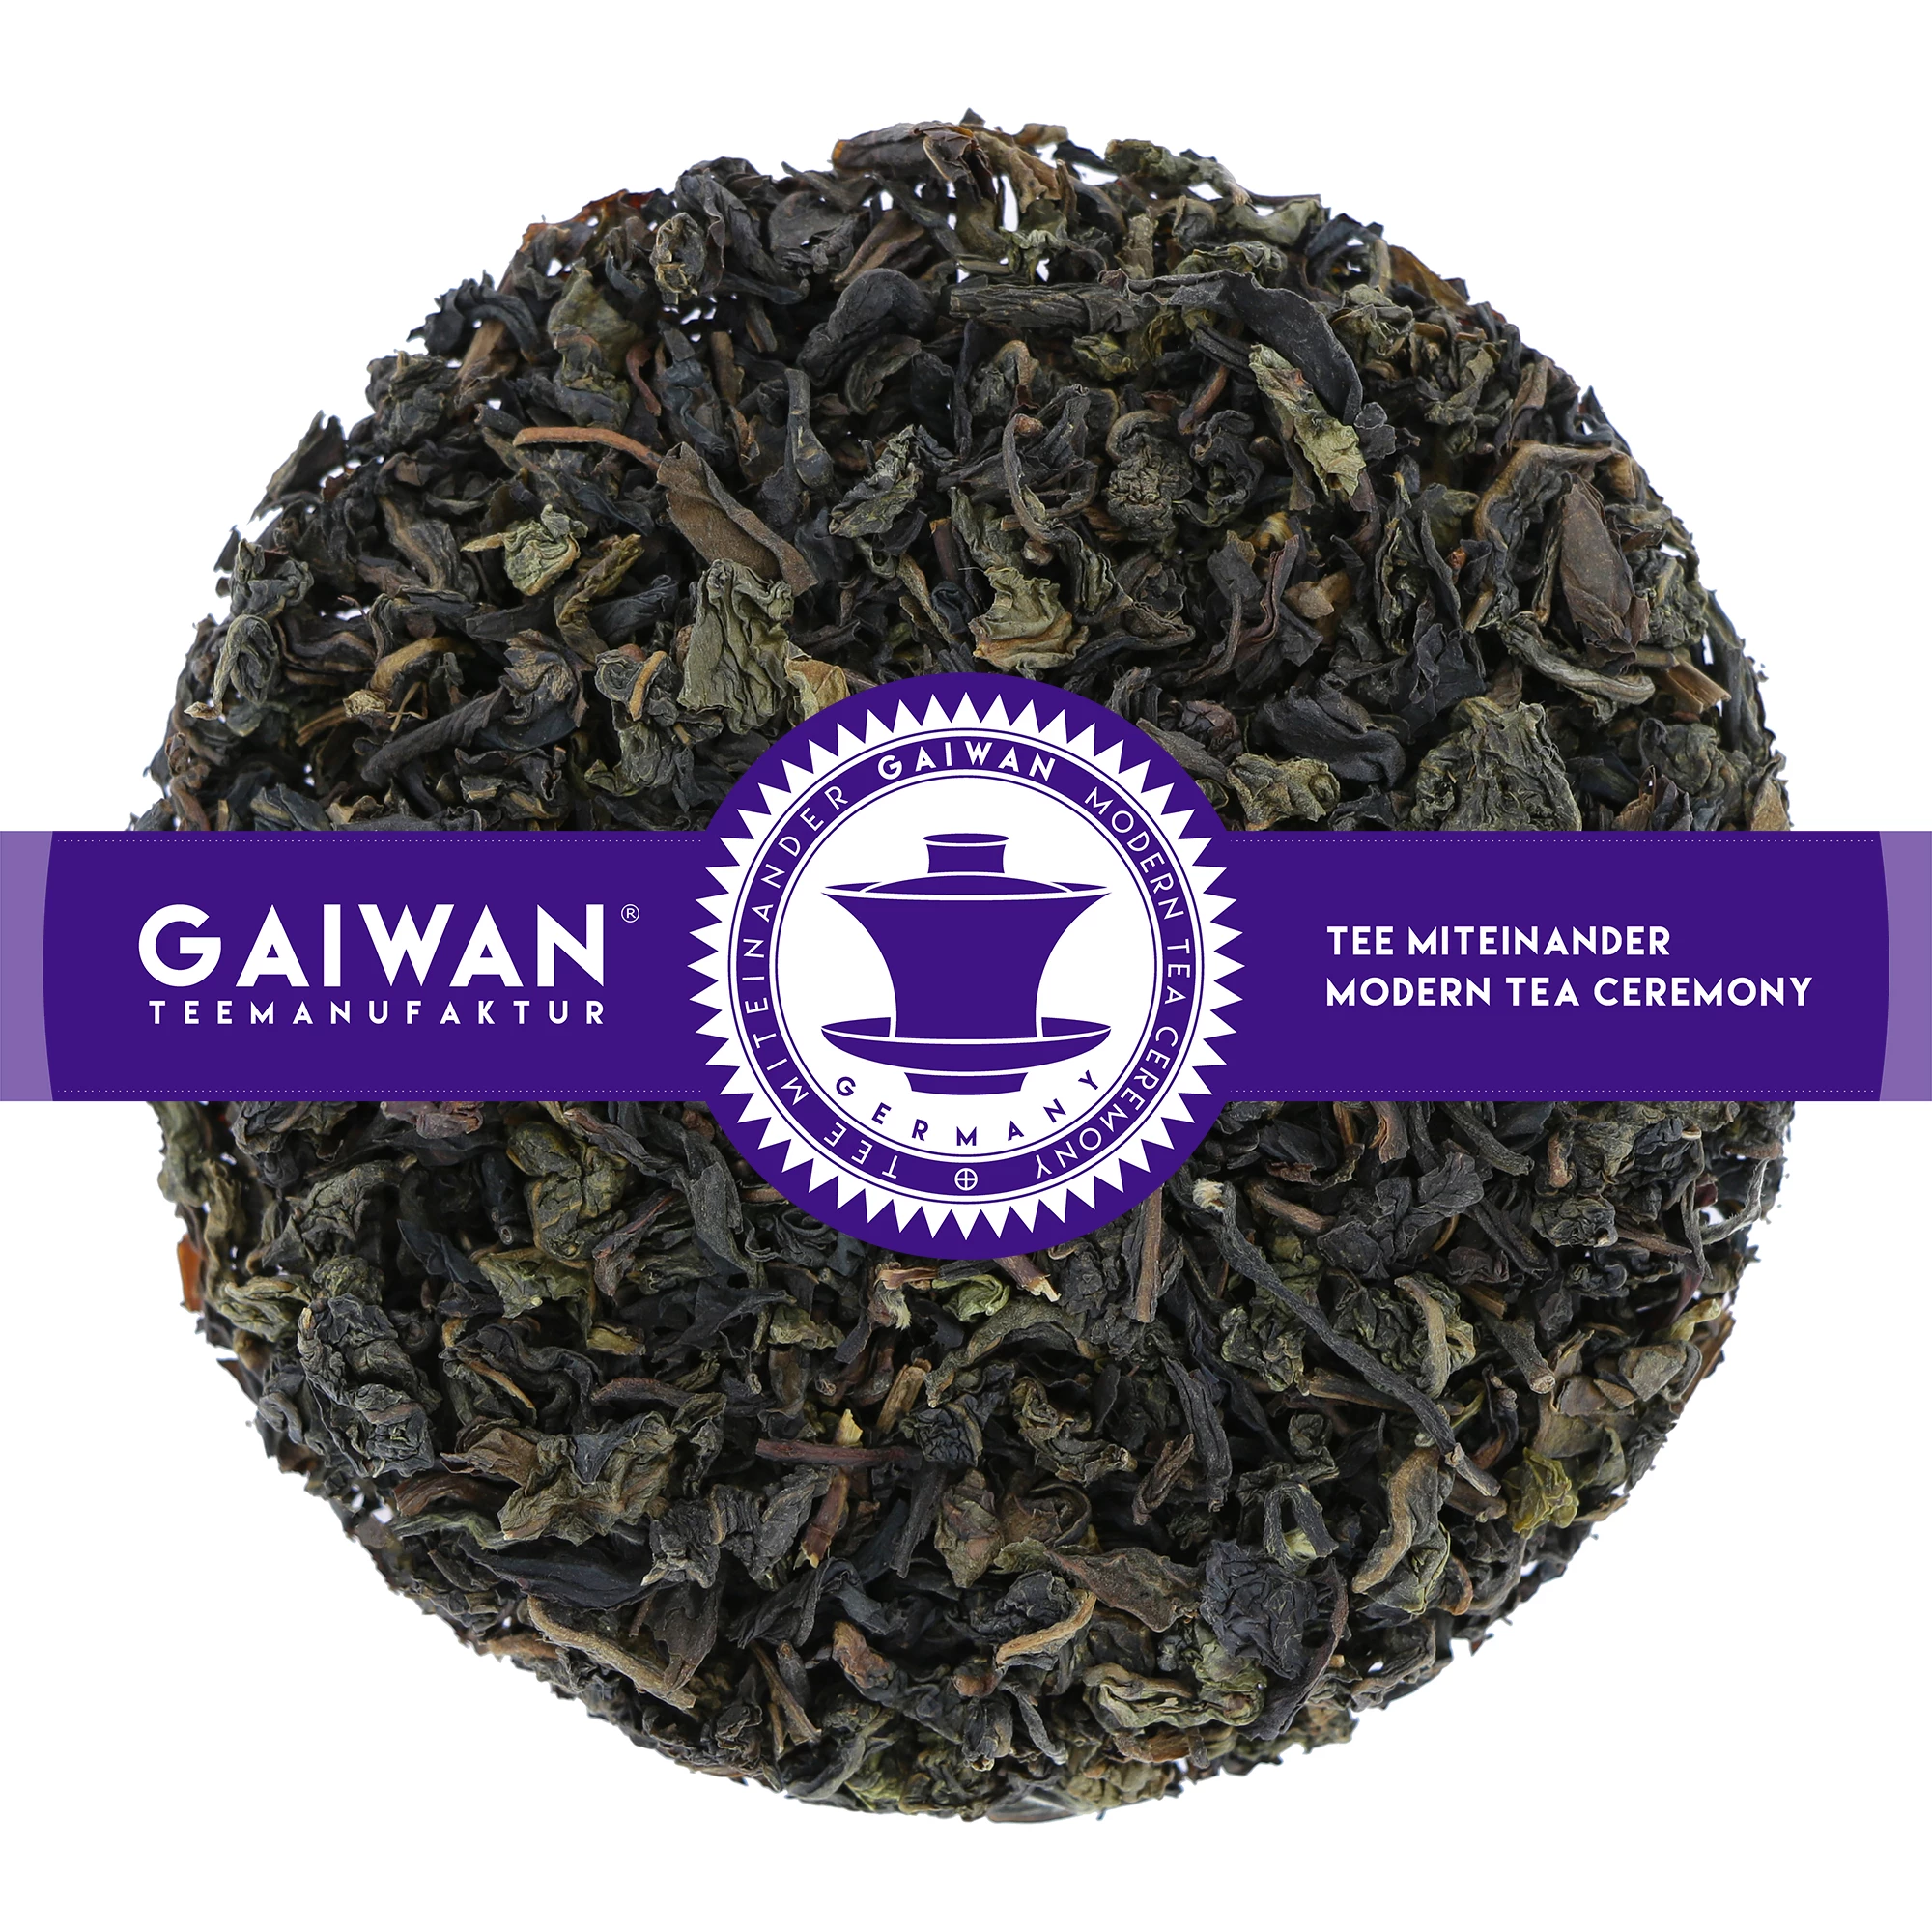 Oolong tea loose leaf "Butterfly of Taiwan"  - GAIWAN® Tea No. 1405